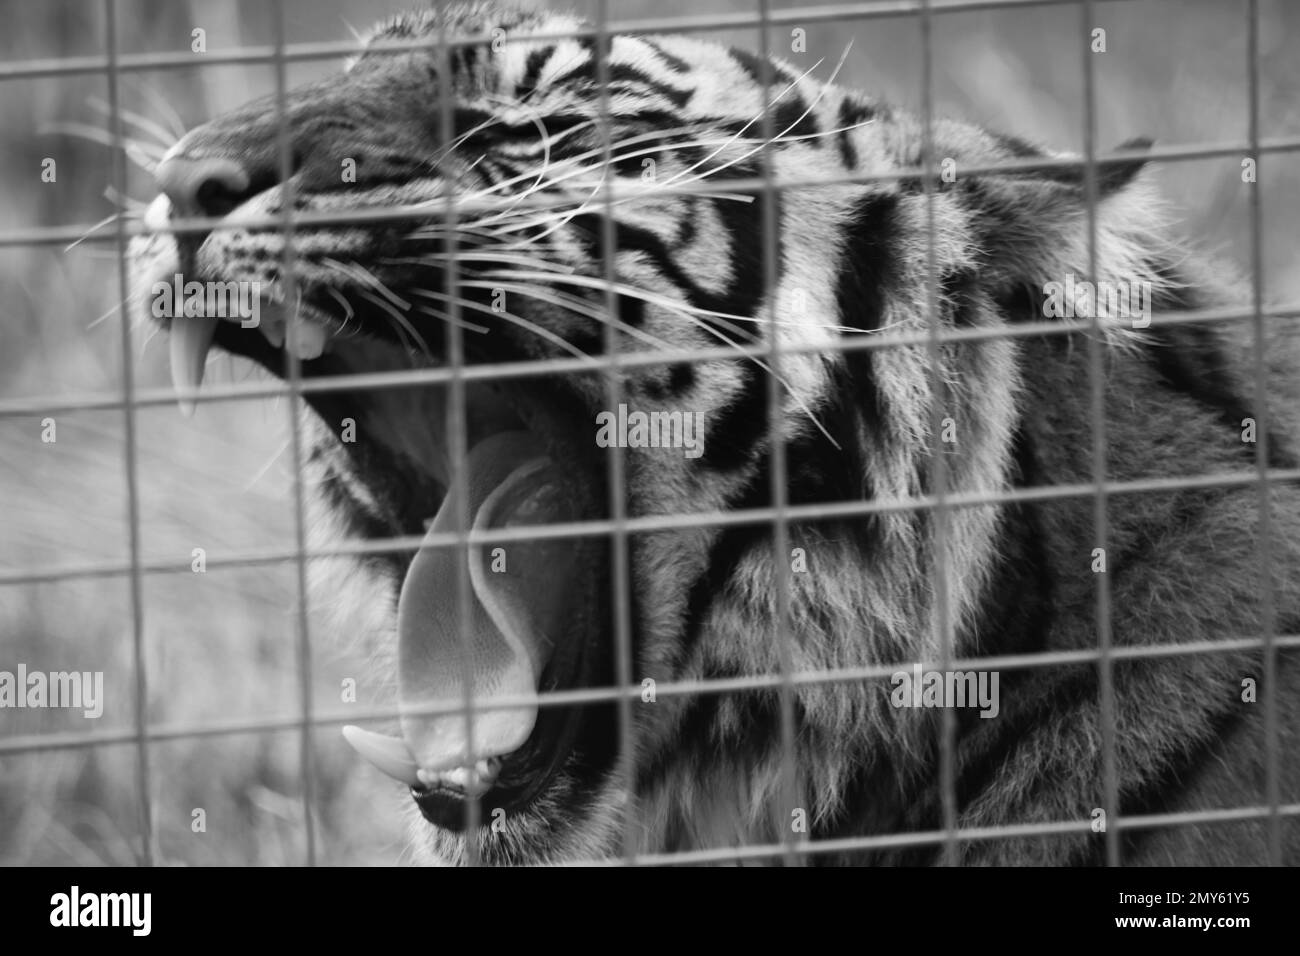 Sumatra Tiger in Gefangenschaft im Vereinigten Königreich Stockfoto